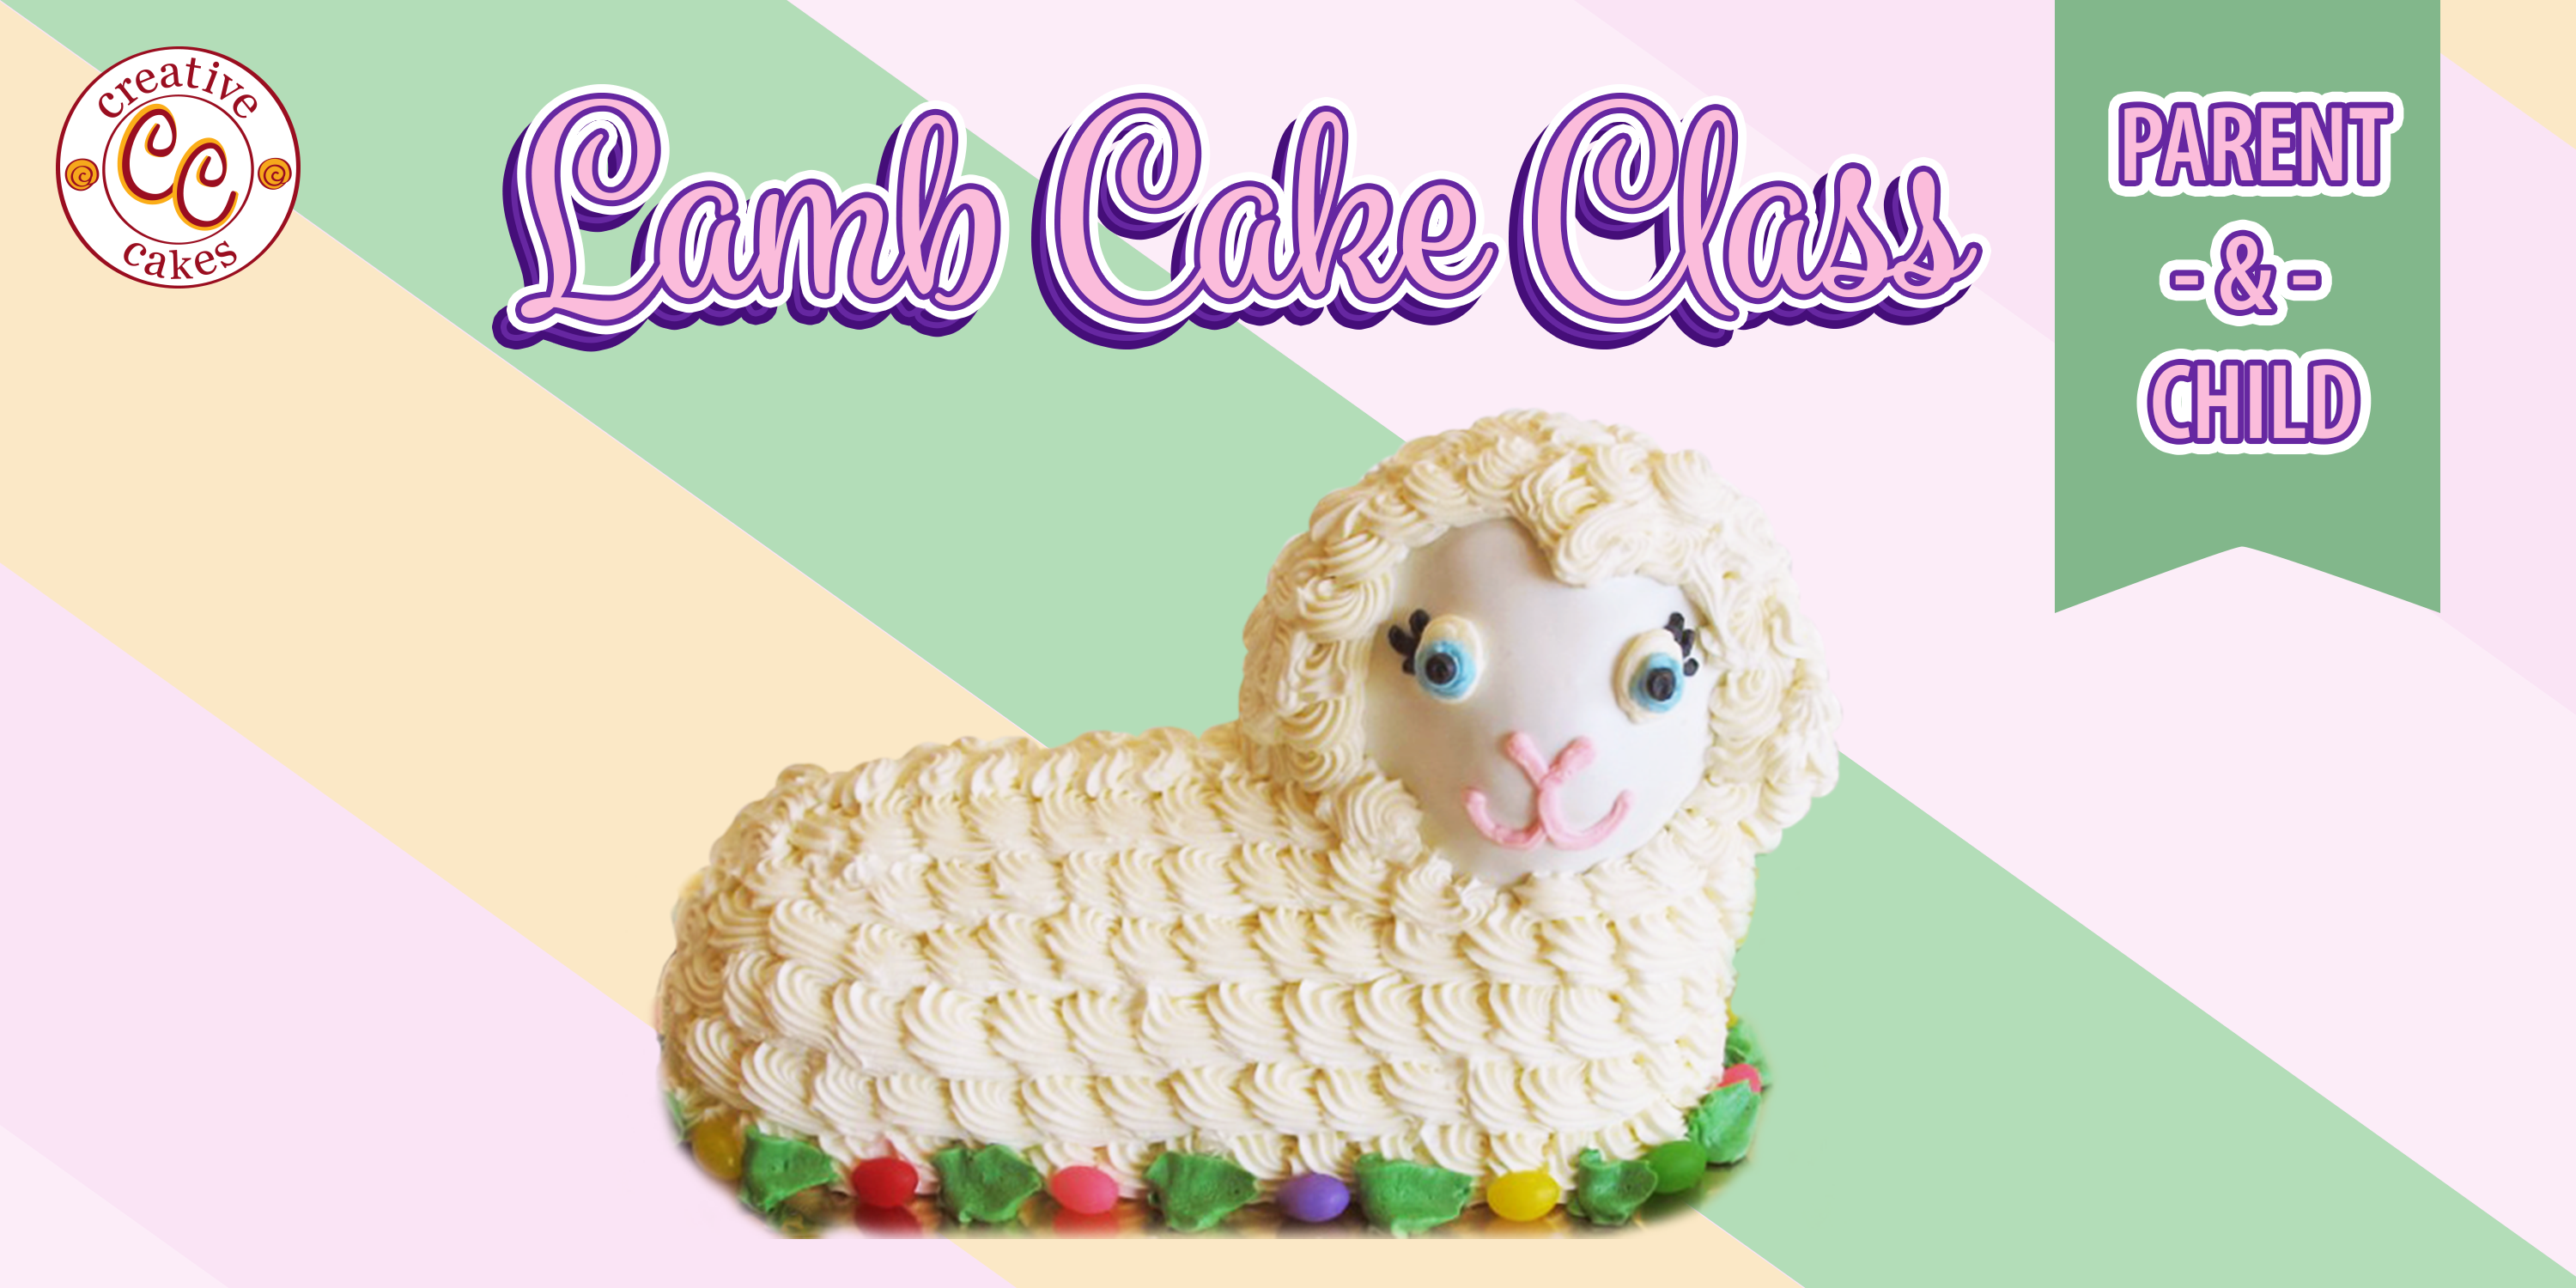 Lamb Cake Class: Parent and Child